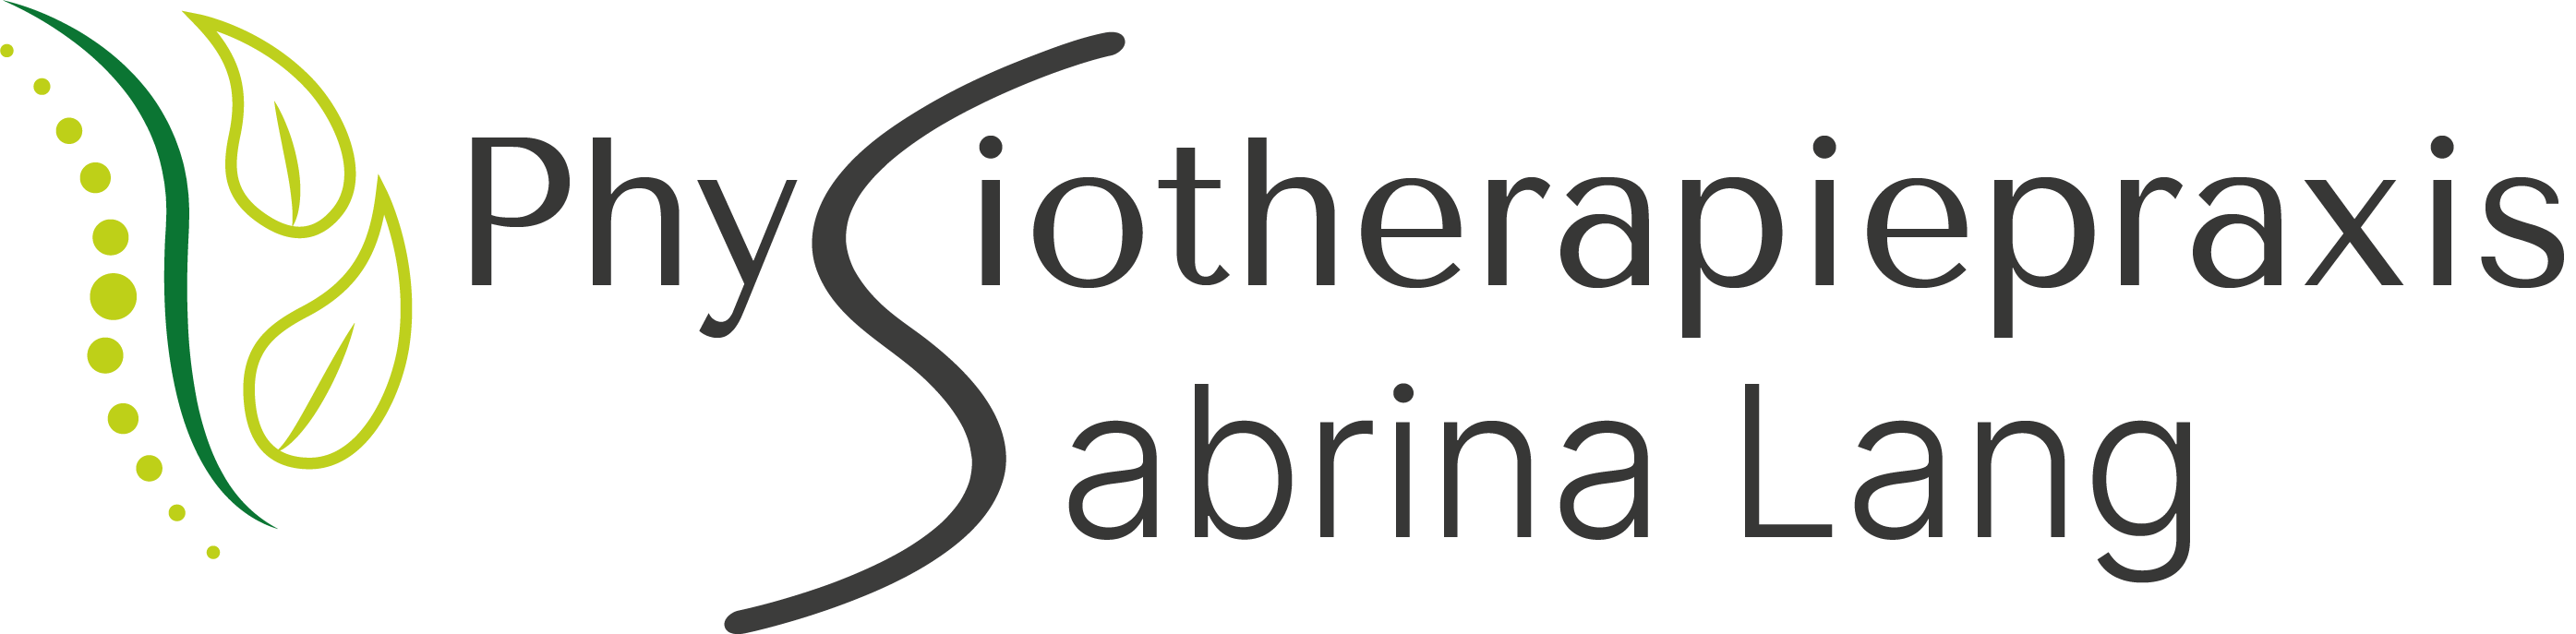 Physiotherapiepraxis Sabrina Lang Logo mit Schrift